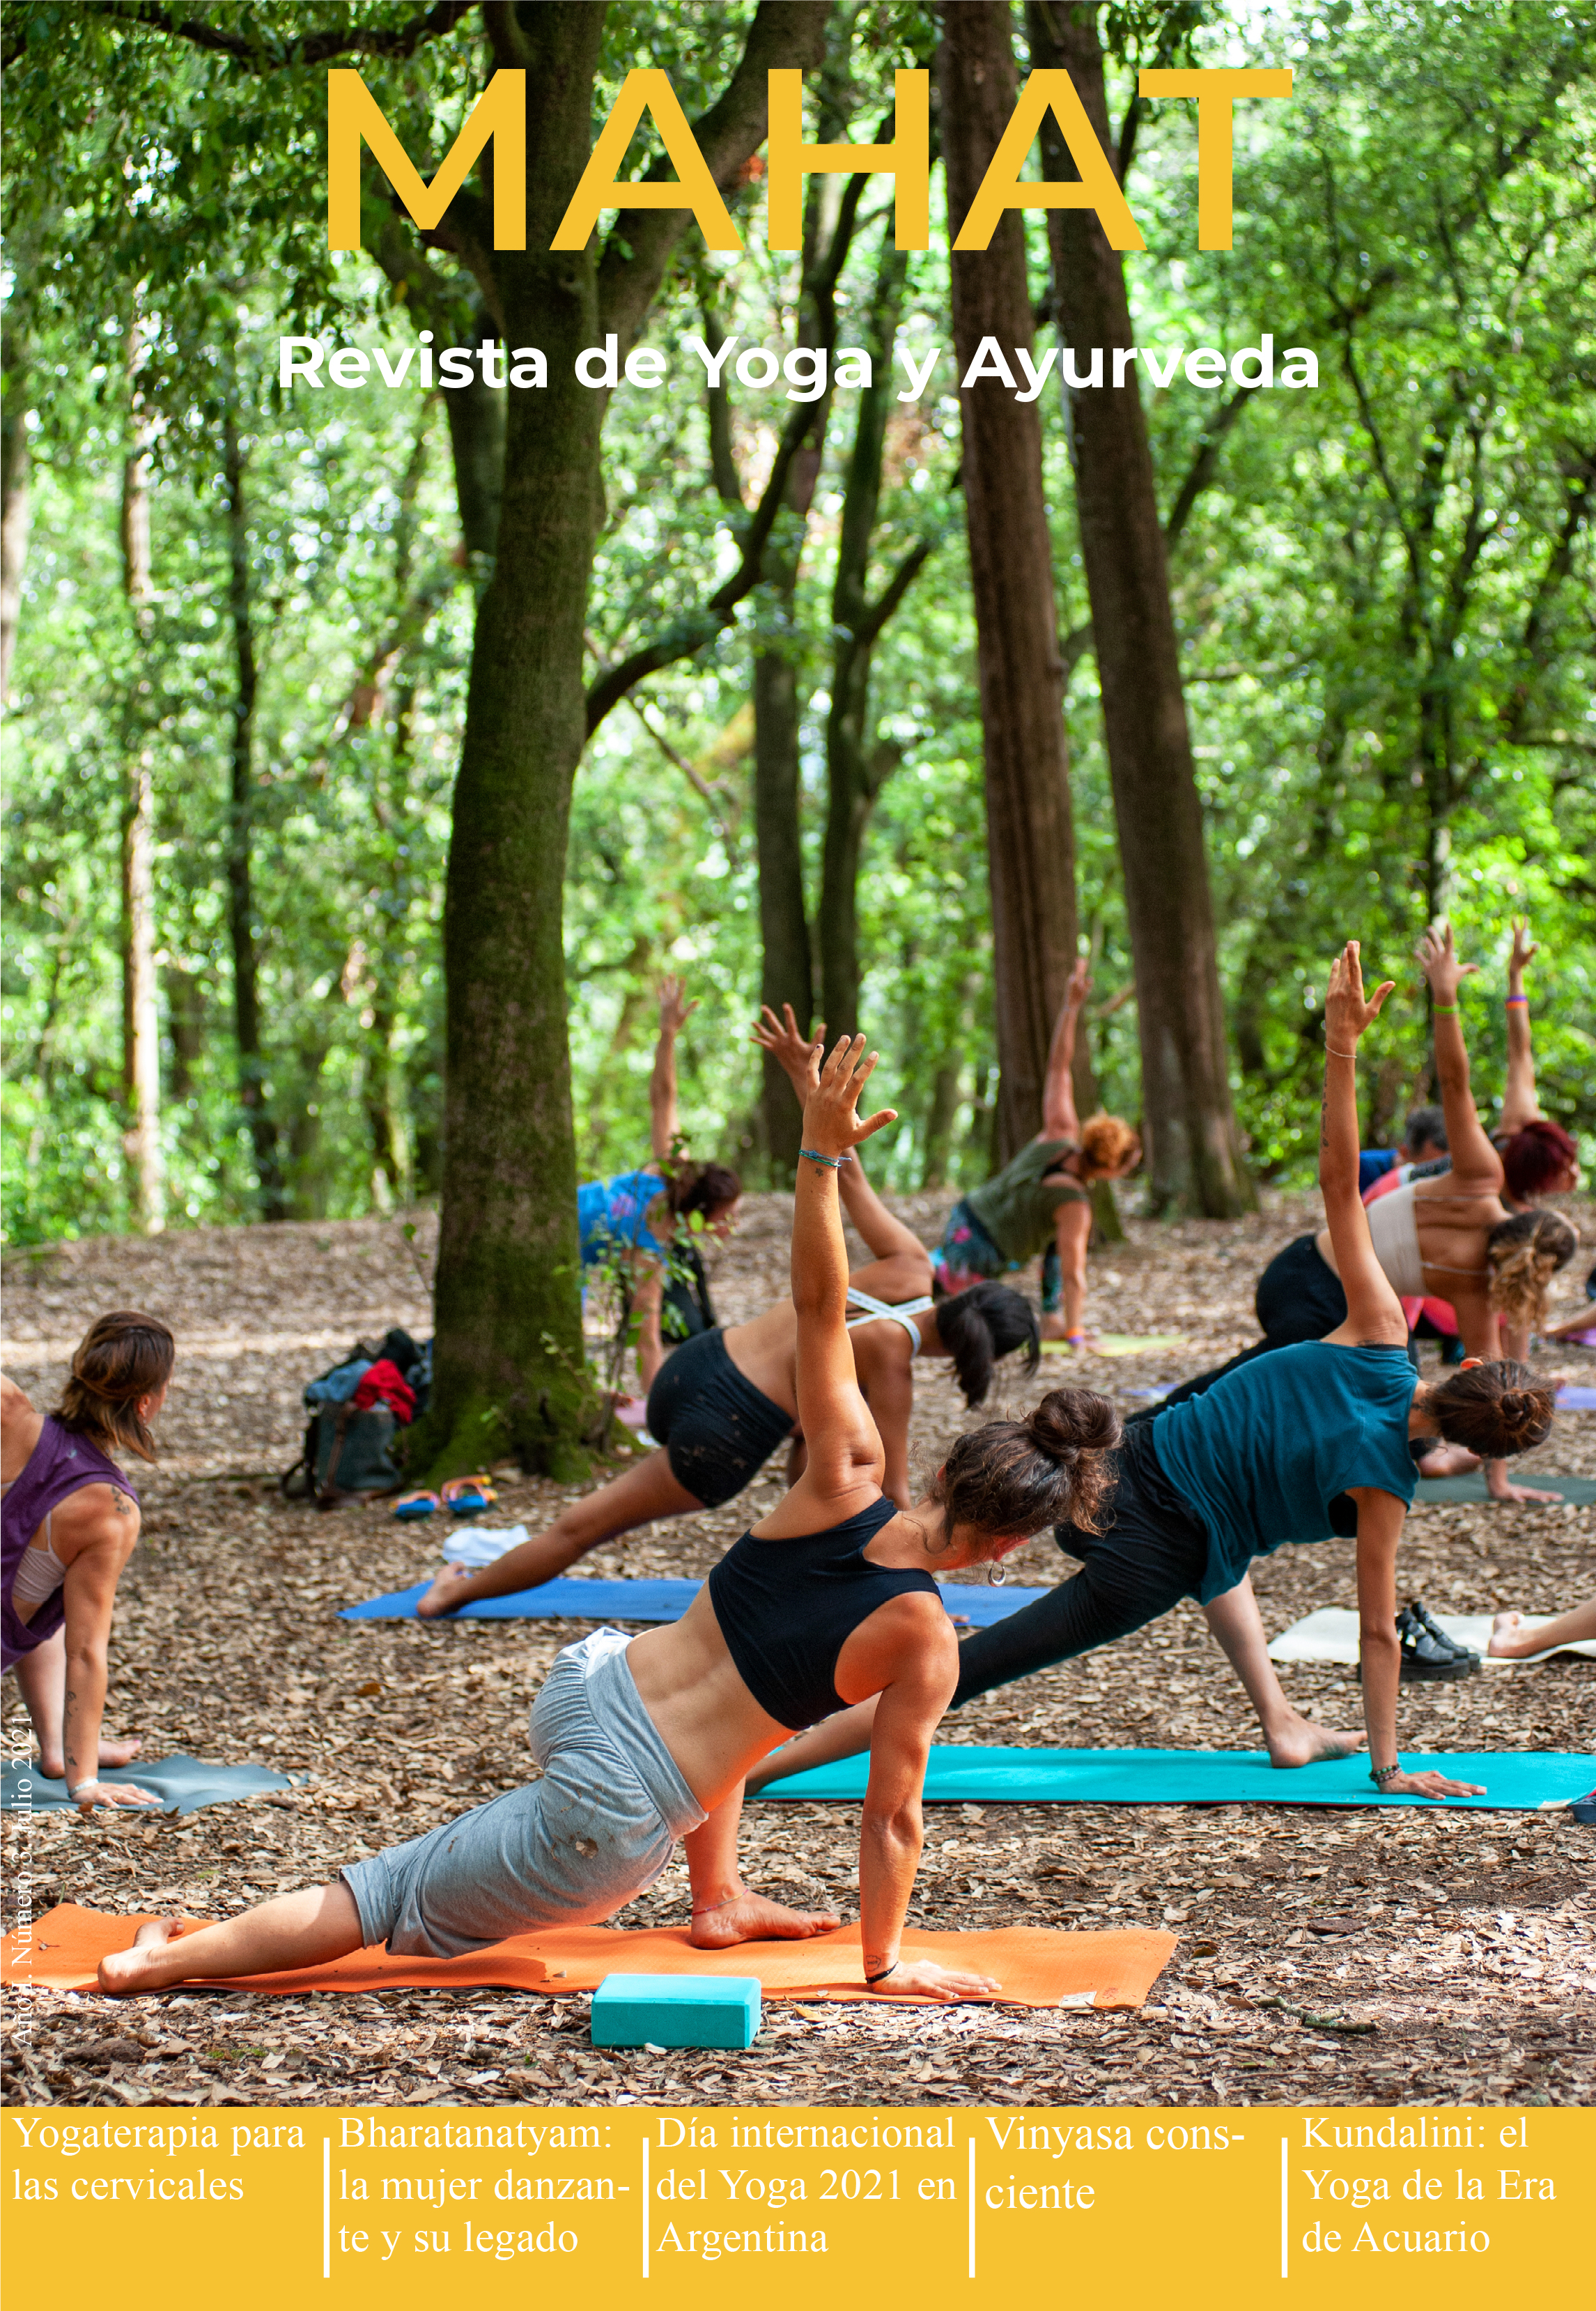 Revista Yoga Vida & Yoga_10 (Digital) 